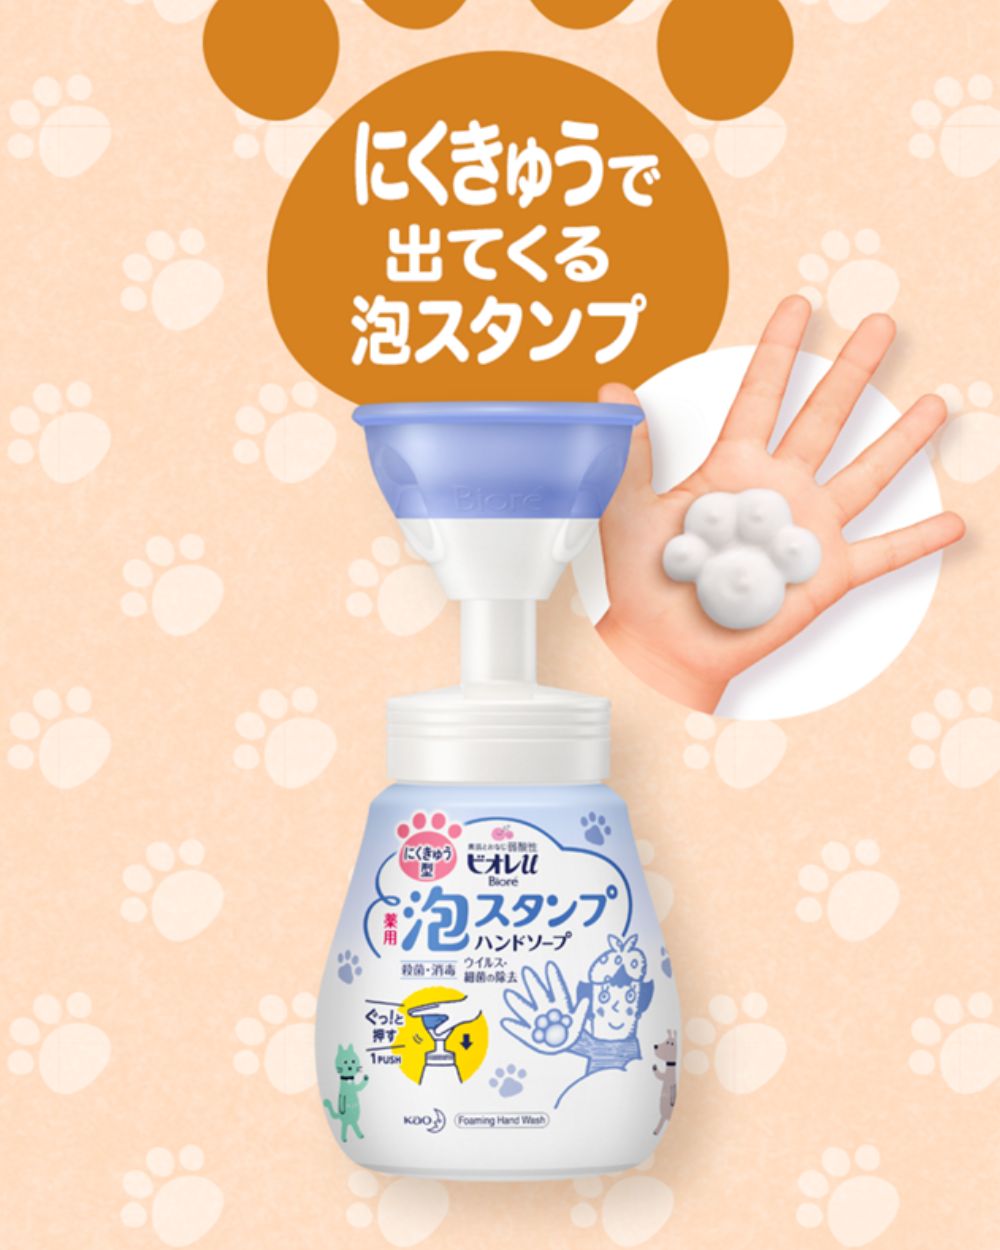 Bioré - Foam Stamp Hand Soap Paw